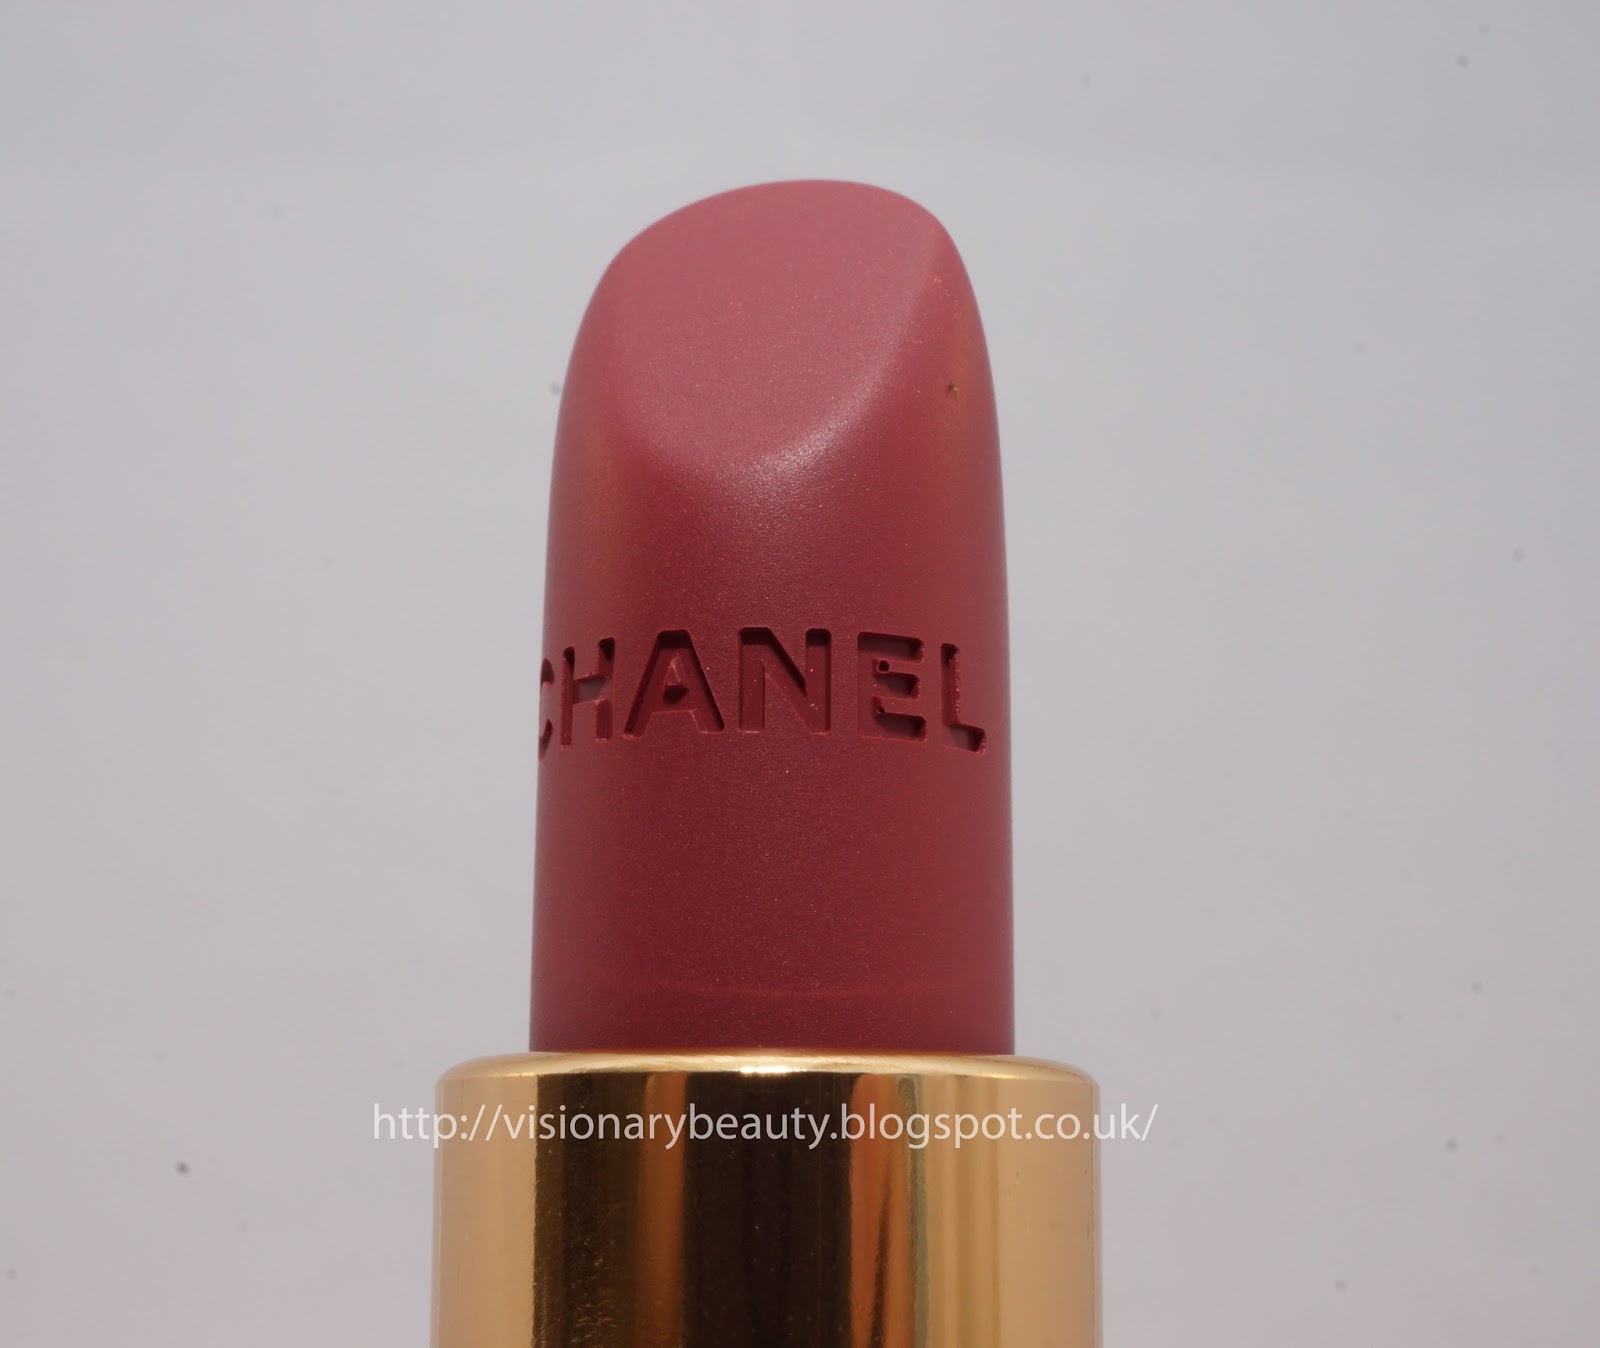 Chanel Beauty Rouge Allure Velvet Luminous Matte Lipstick-63